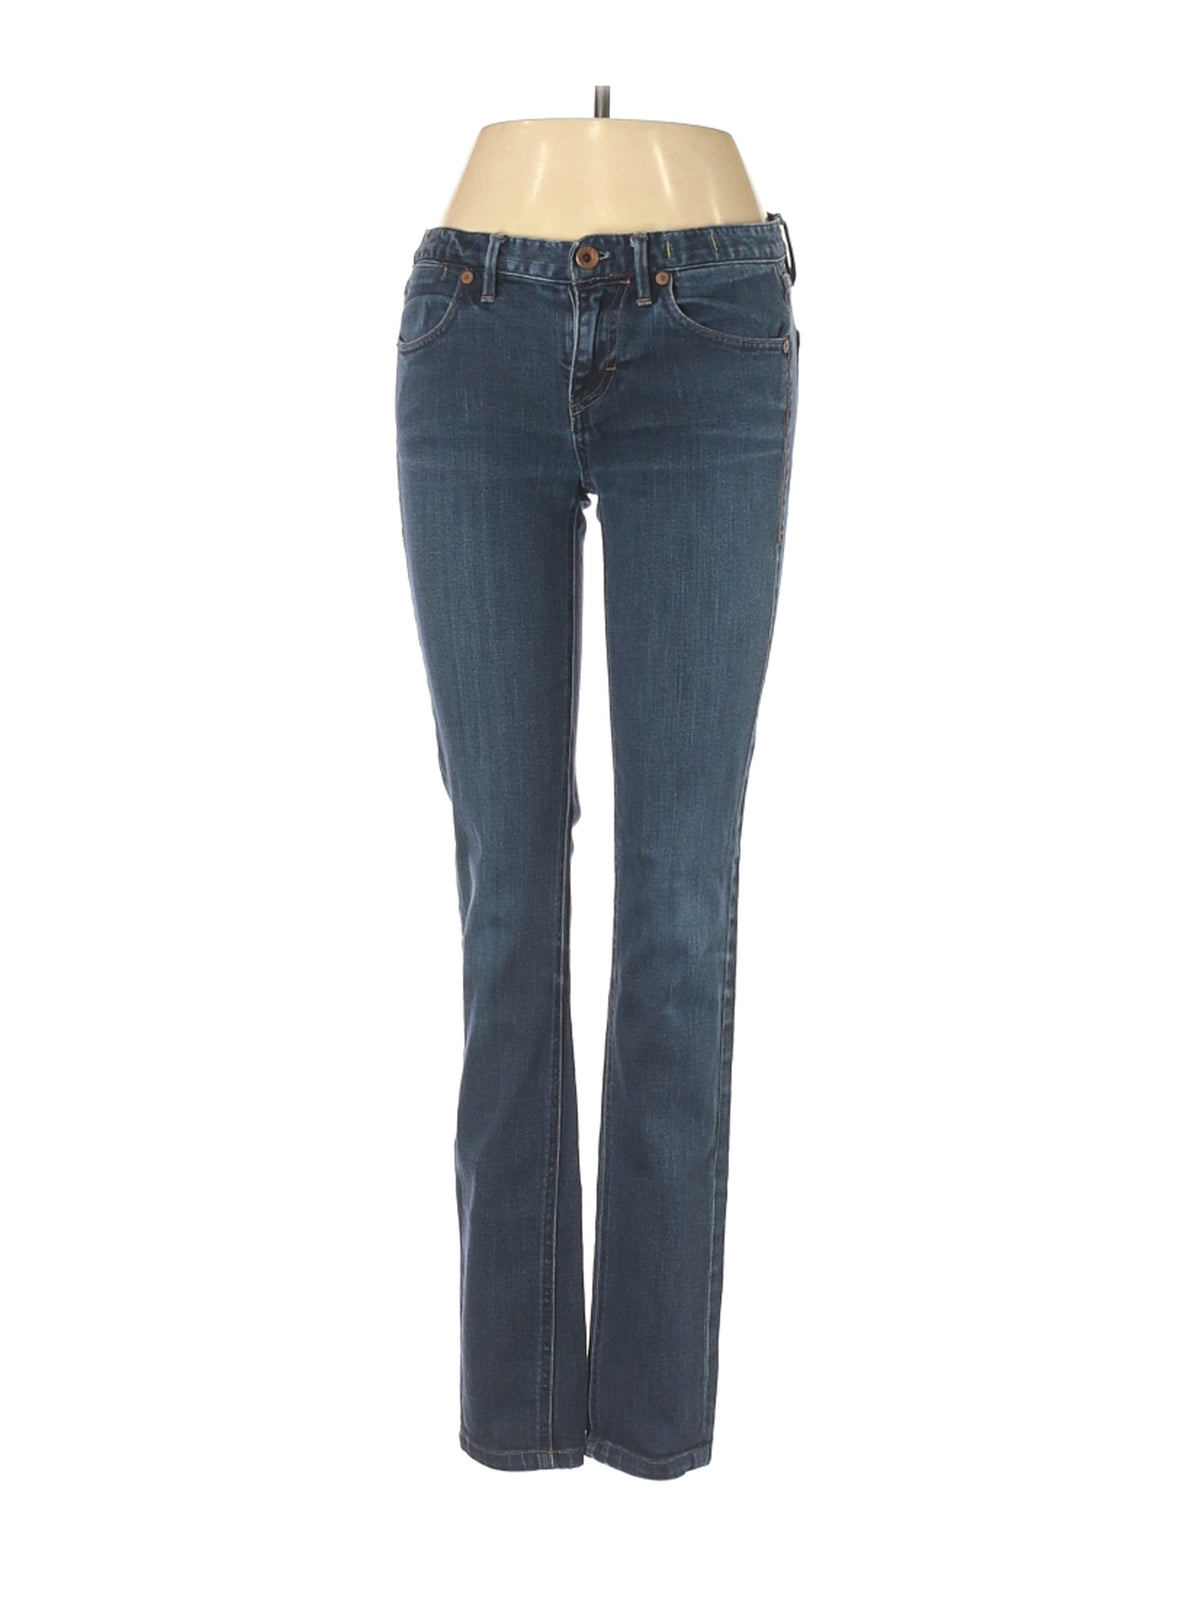 Bootleg Jeans in Dark Wash waist size - 26